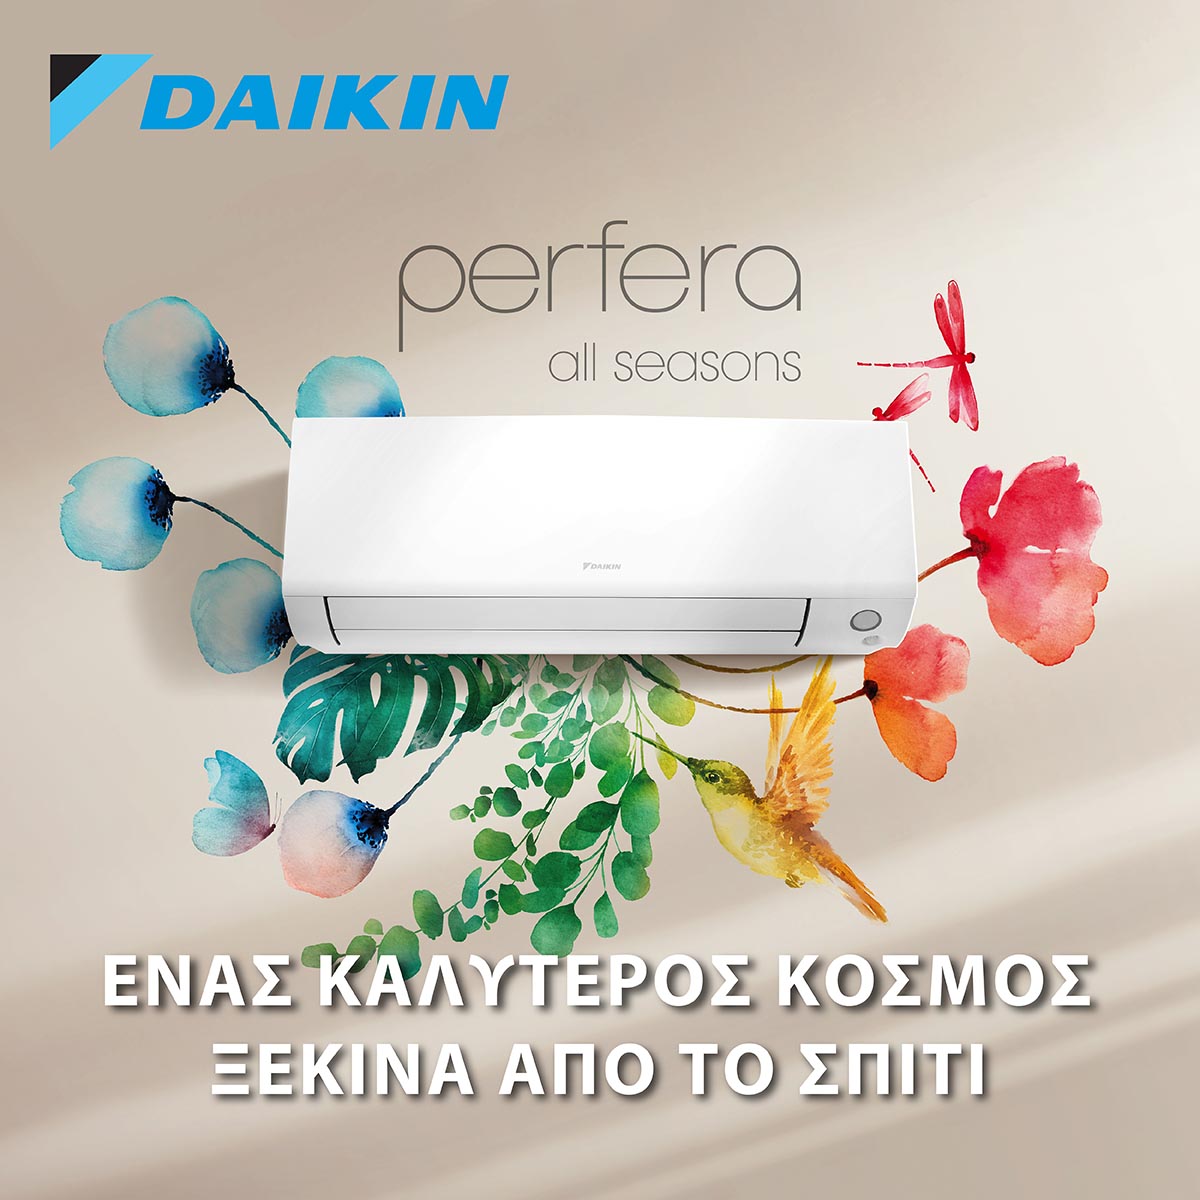 Daikin Perfera All Seasons: Ιδανικό περιβάλλον όλο τον χρόνο!